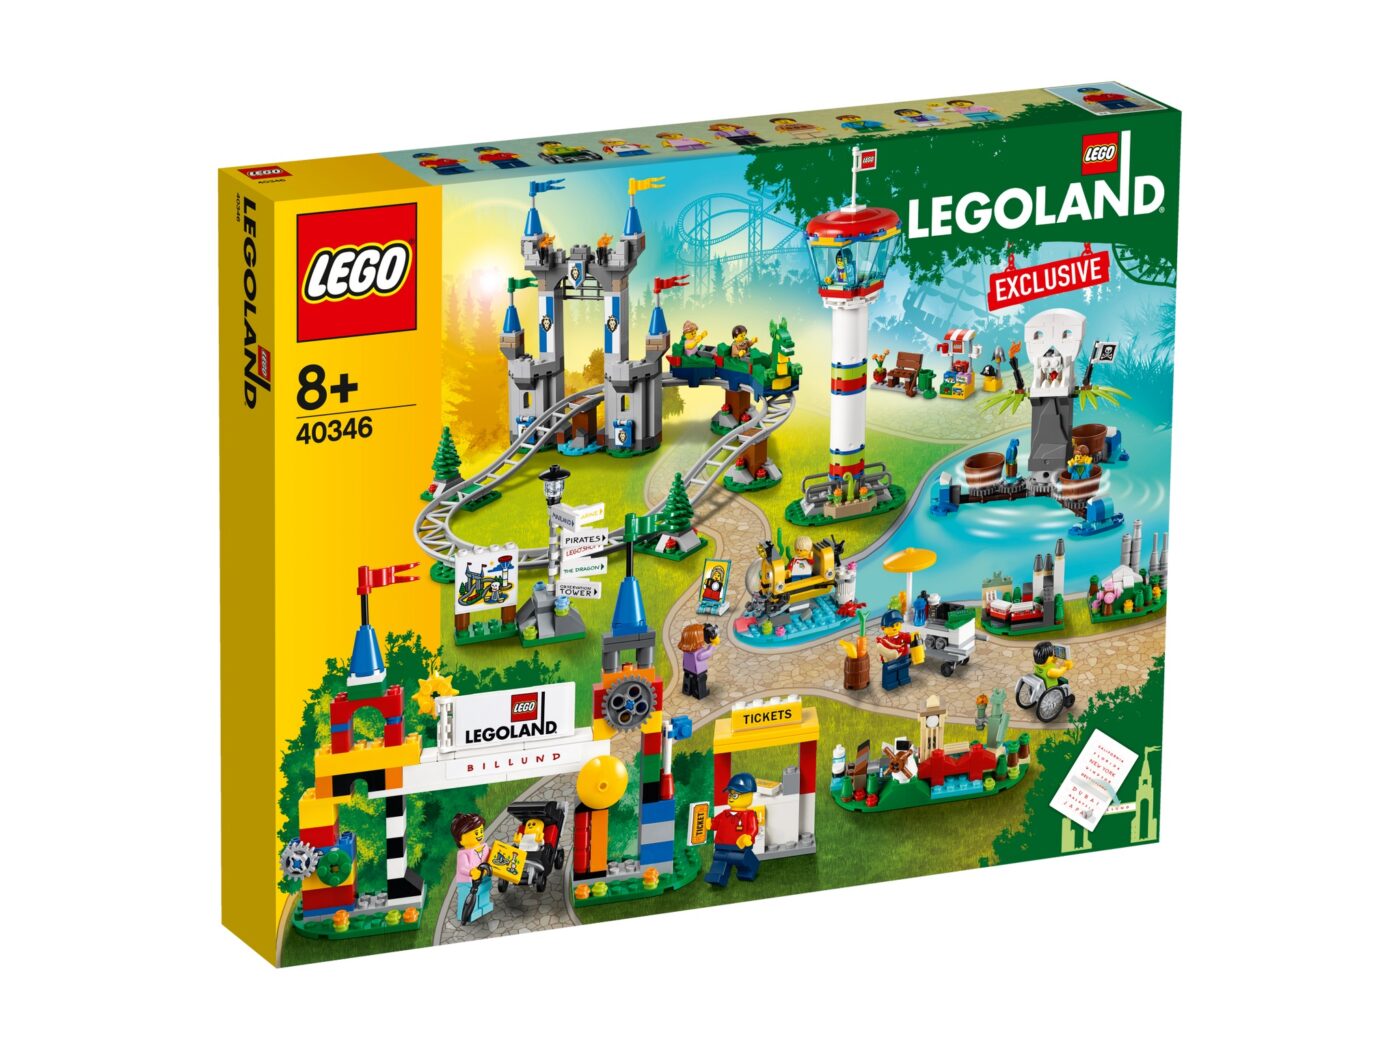 New LEGOLAND-exclusive 40710 Legoland Pirate Splash Battle revealed!14